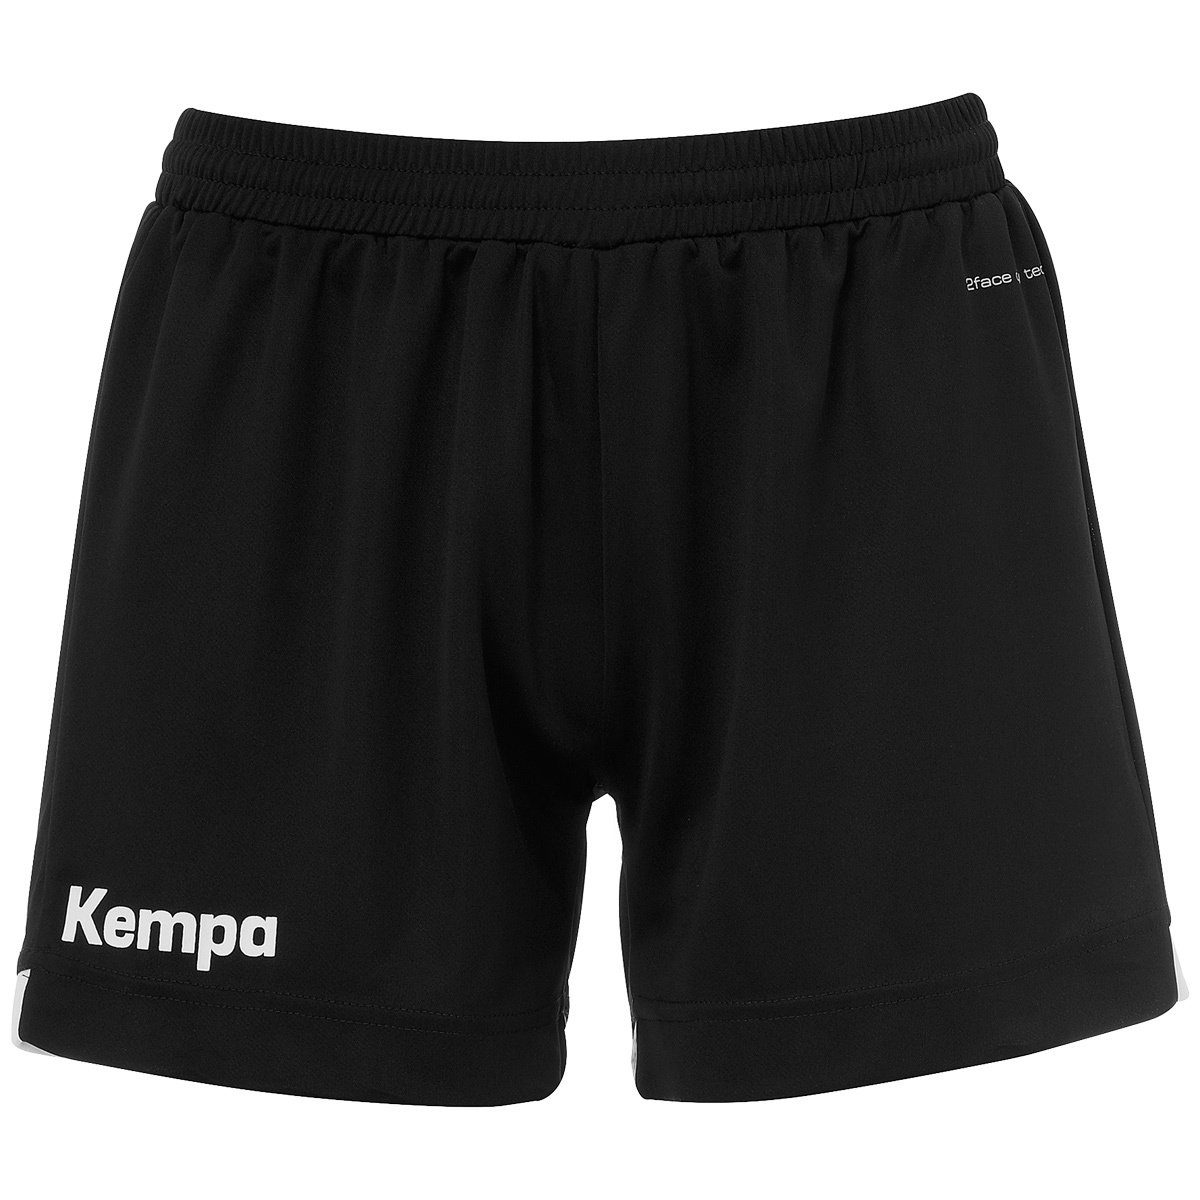 Kempa Shorts Kempa Shorts PLAYER schwarz/weiß WOMEN